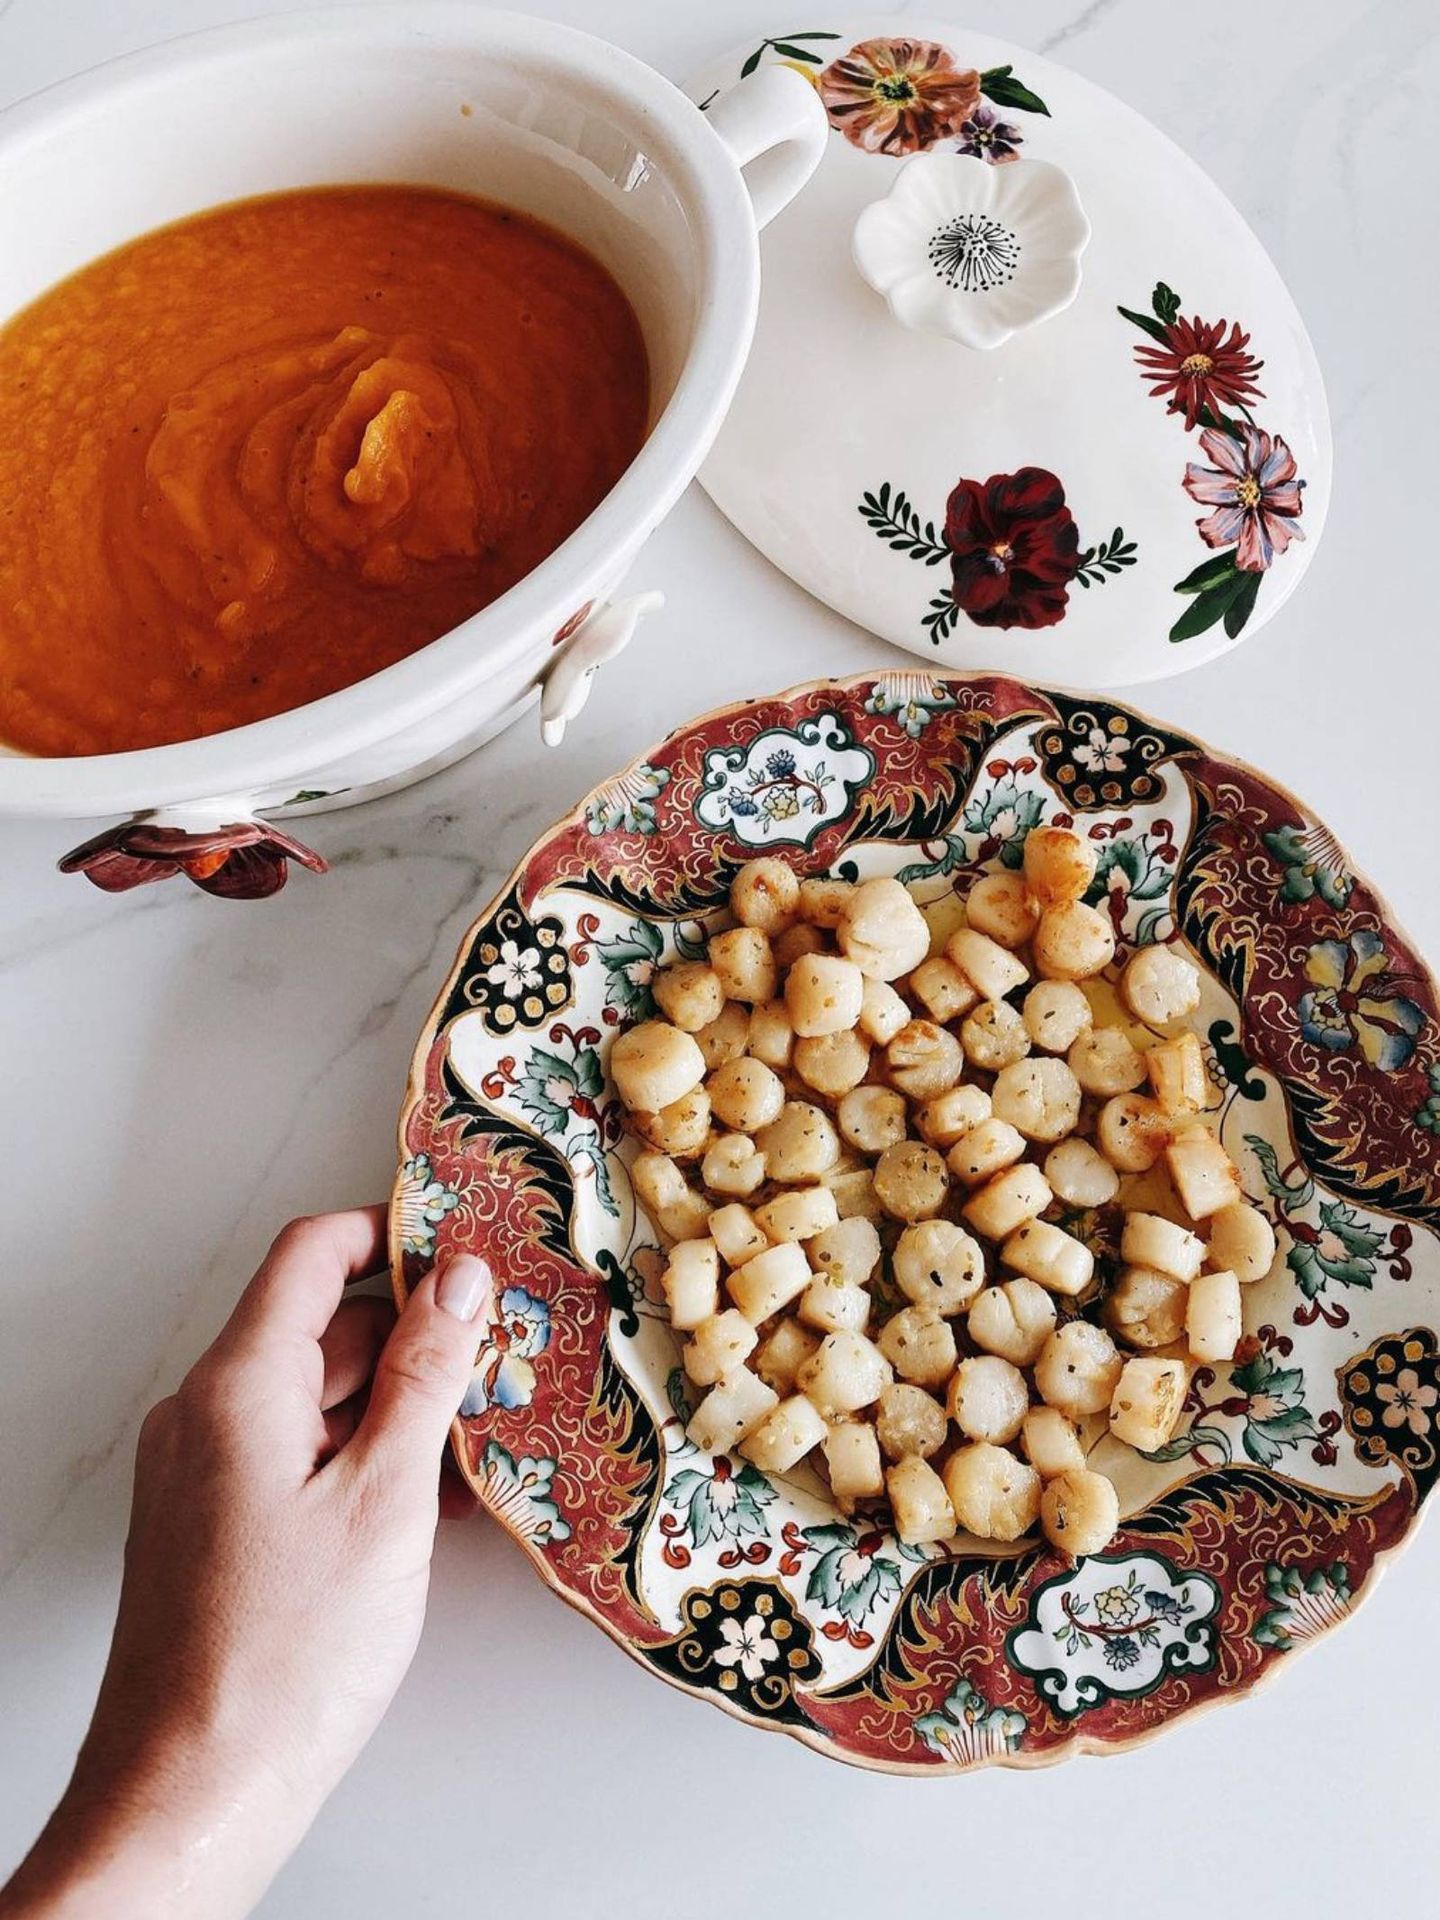 Eugenia Osborne nos enseña una receta sencilla y rápida. (Instagram @eugenia_osborne)